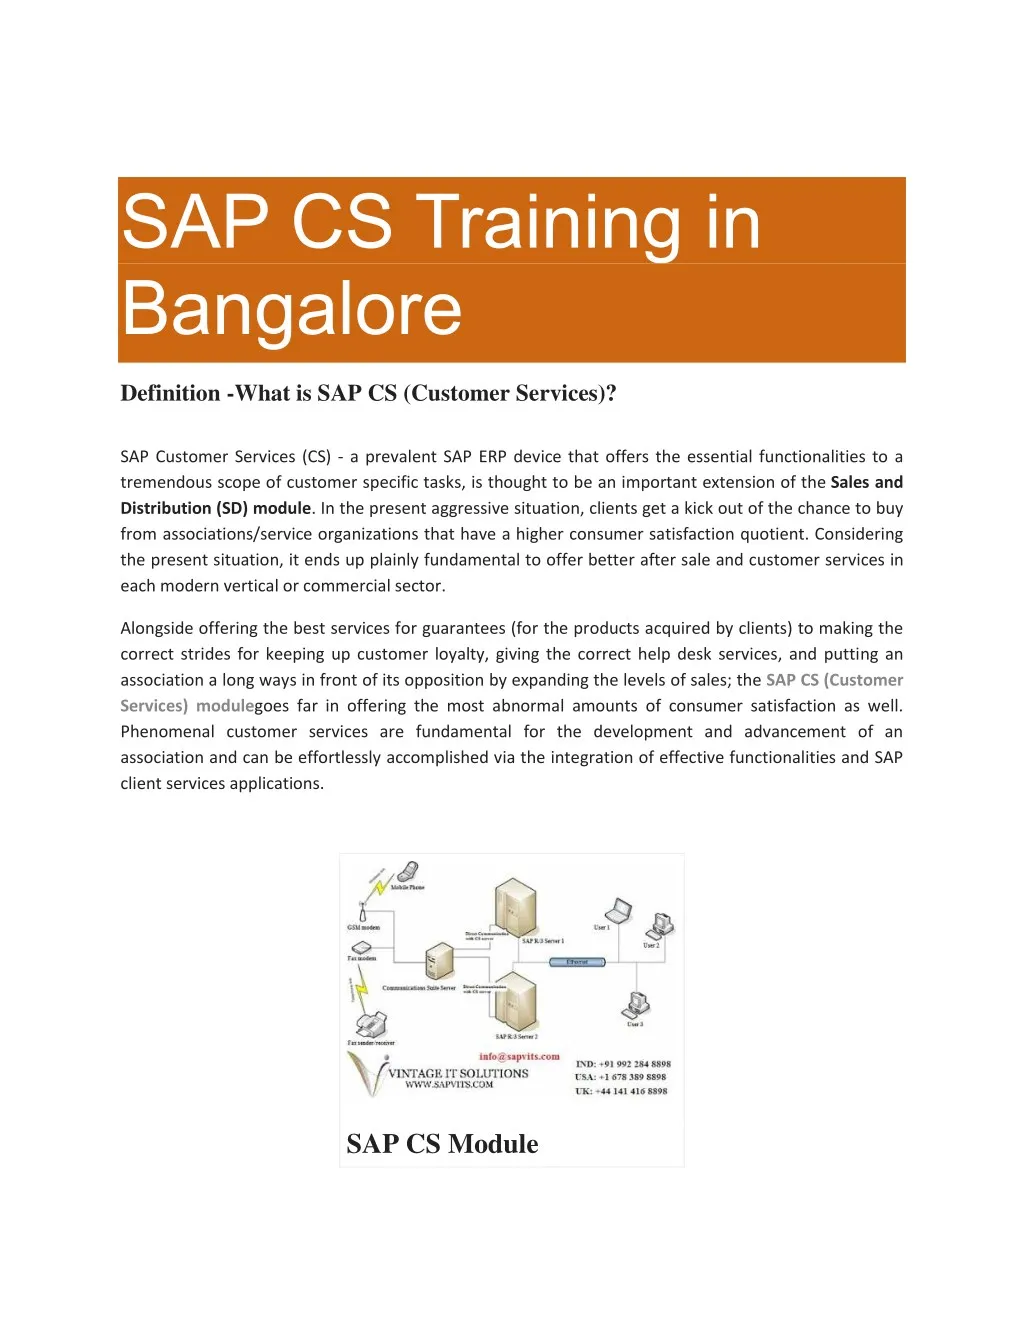 sap cs training in bangalore